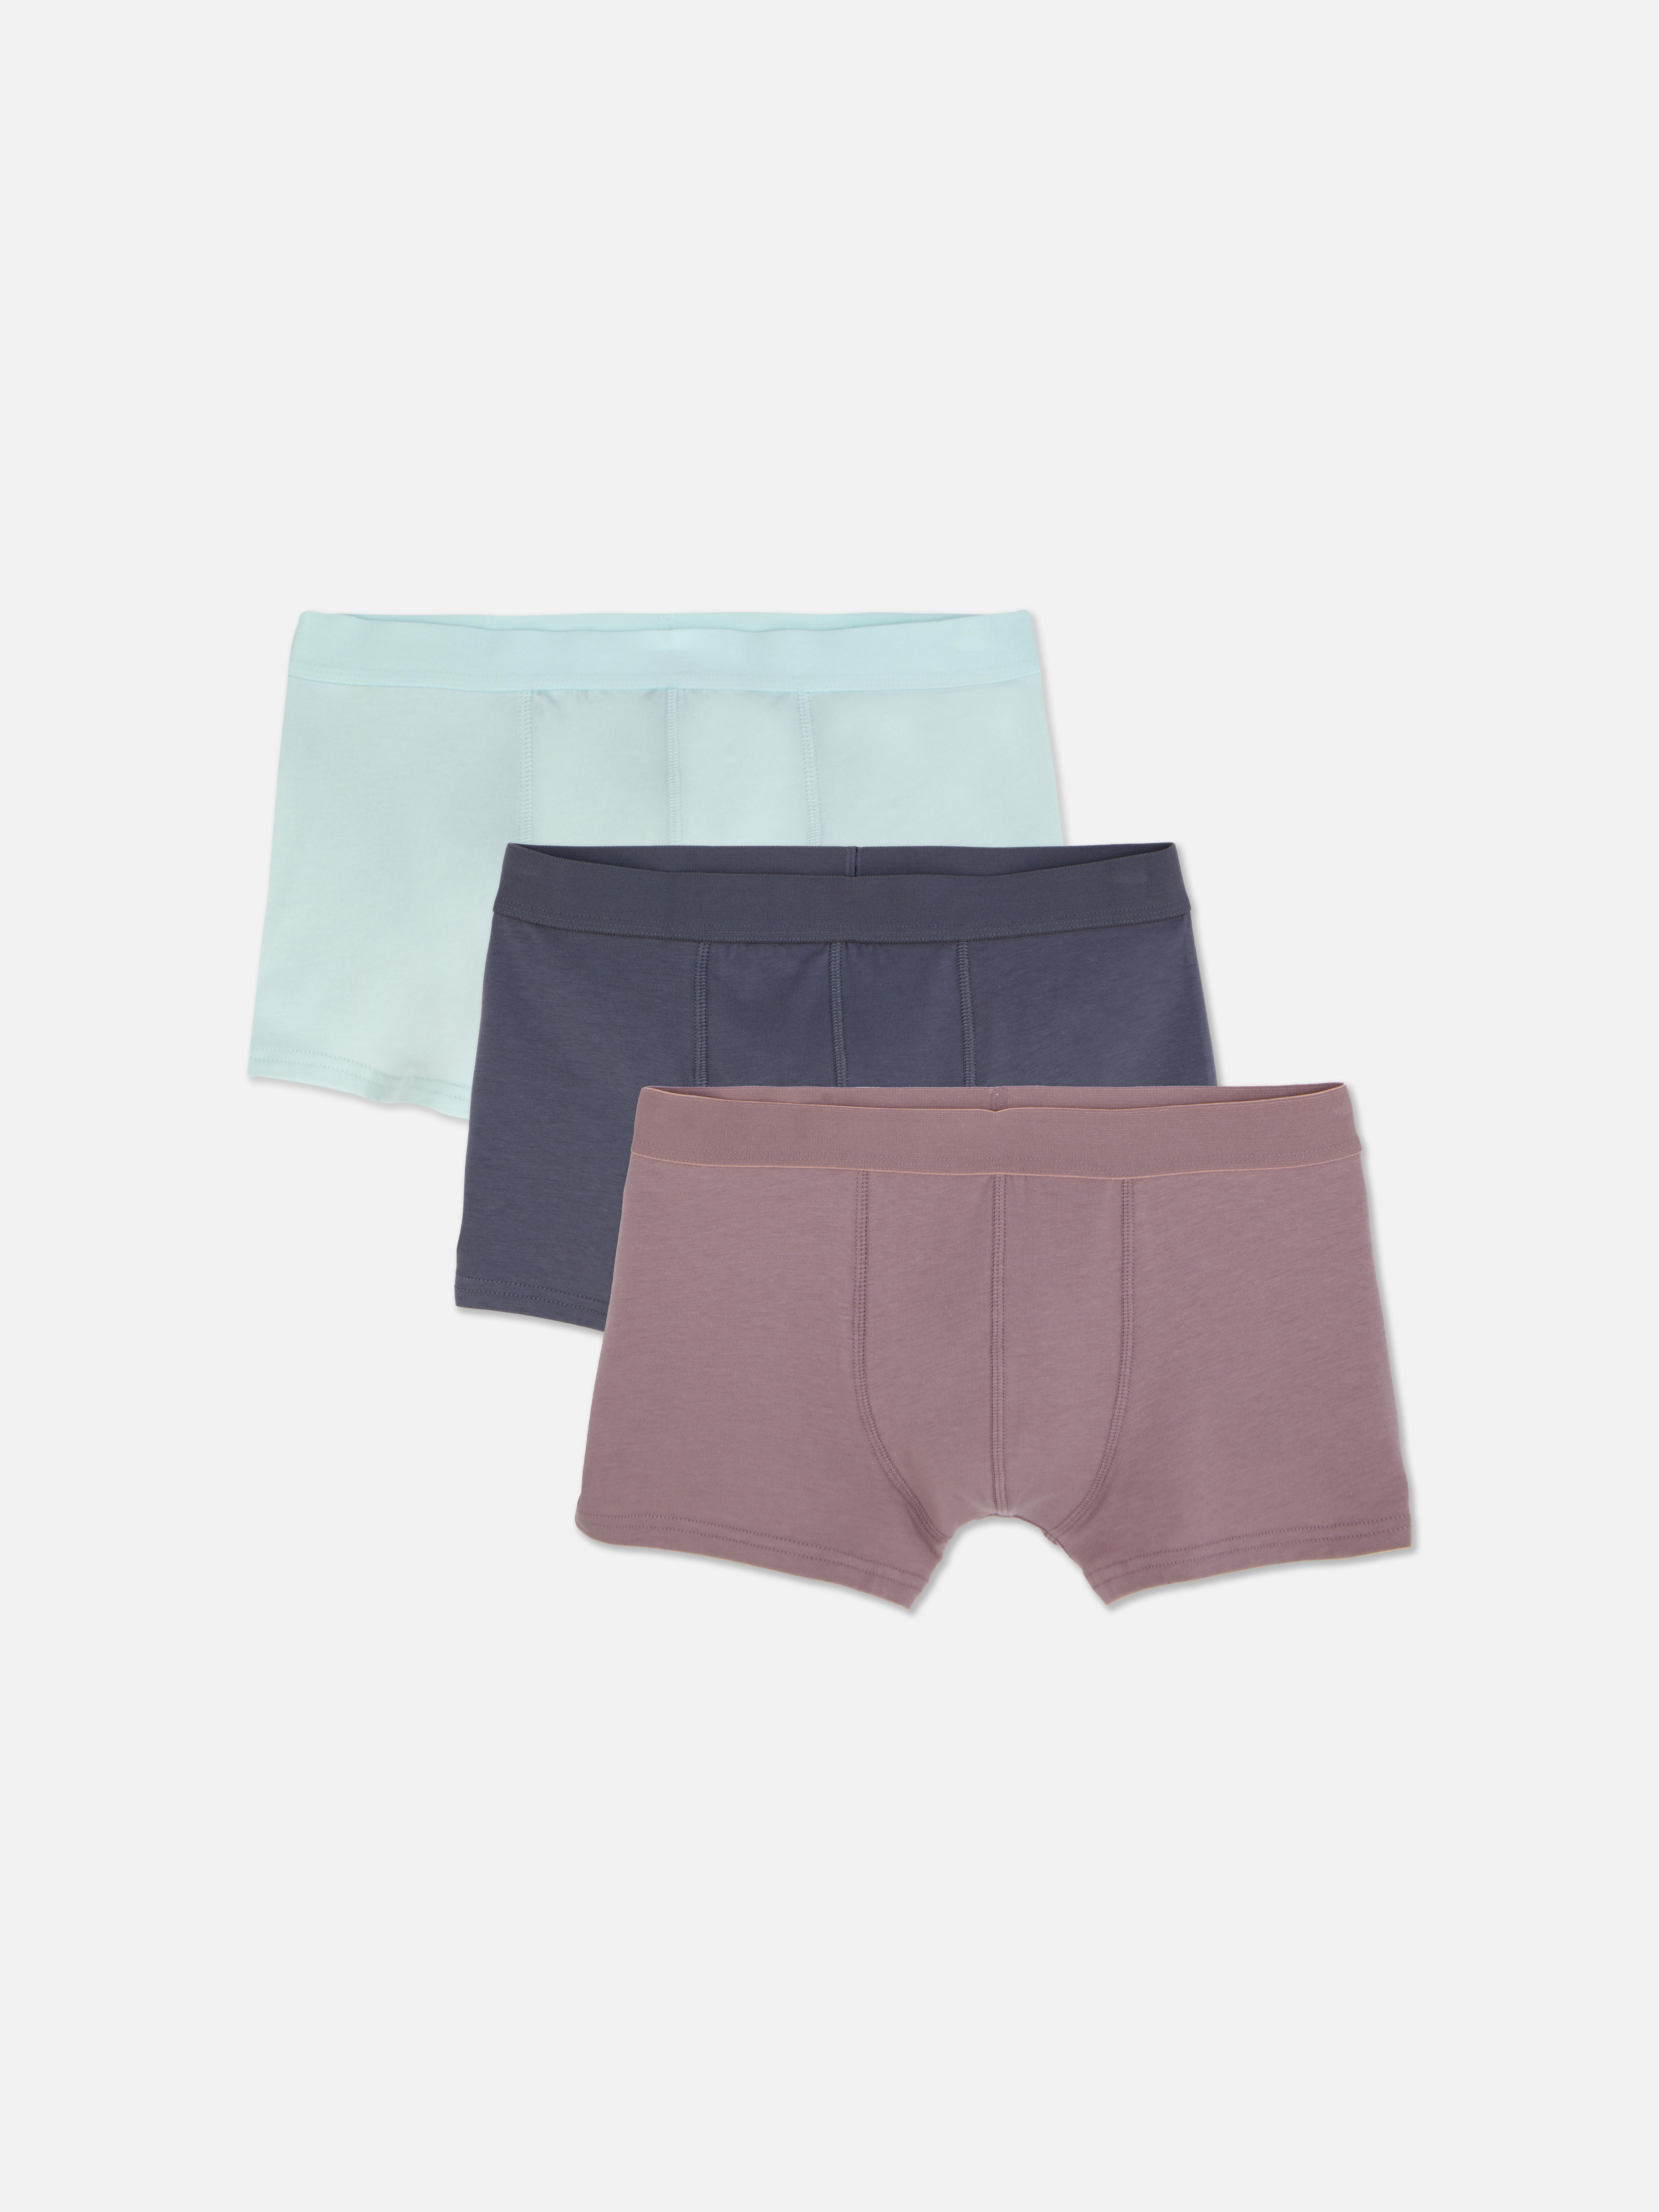 Seamless Triangle Bralette & Thong Underwear Set